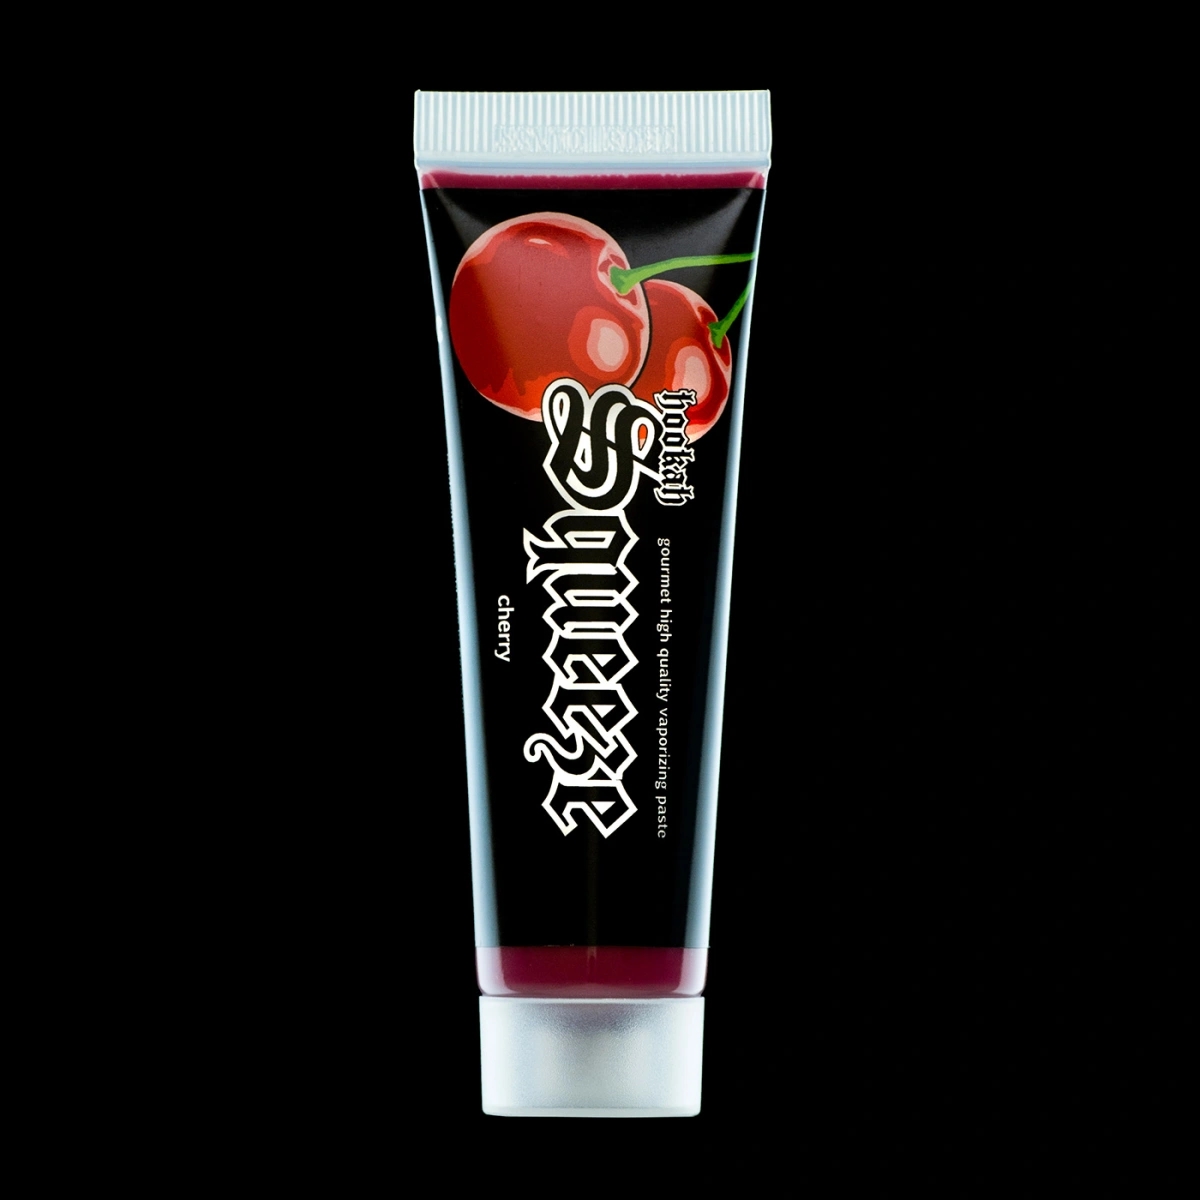 Hookah Squeeze Dampfpaste 25g Cherry